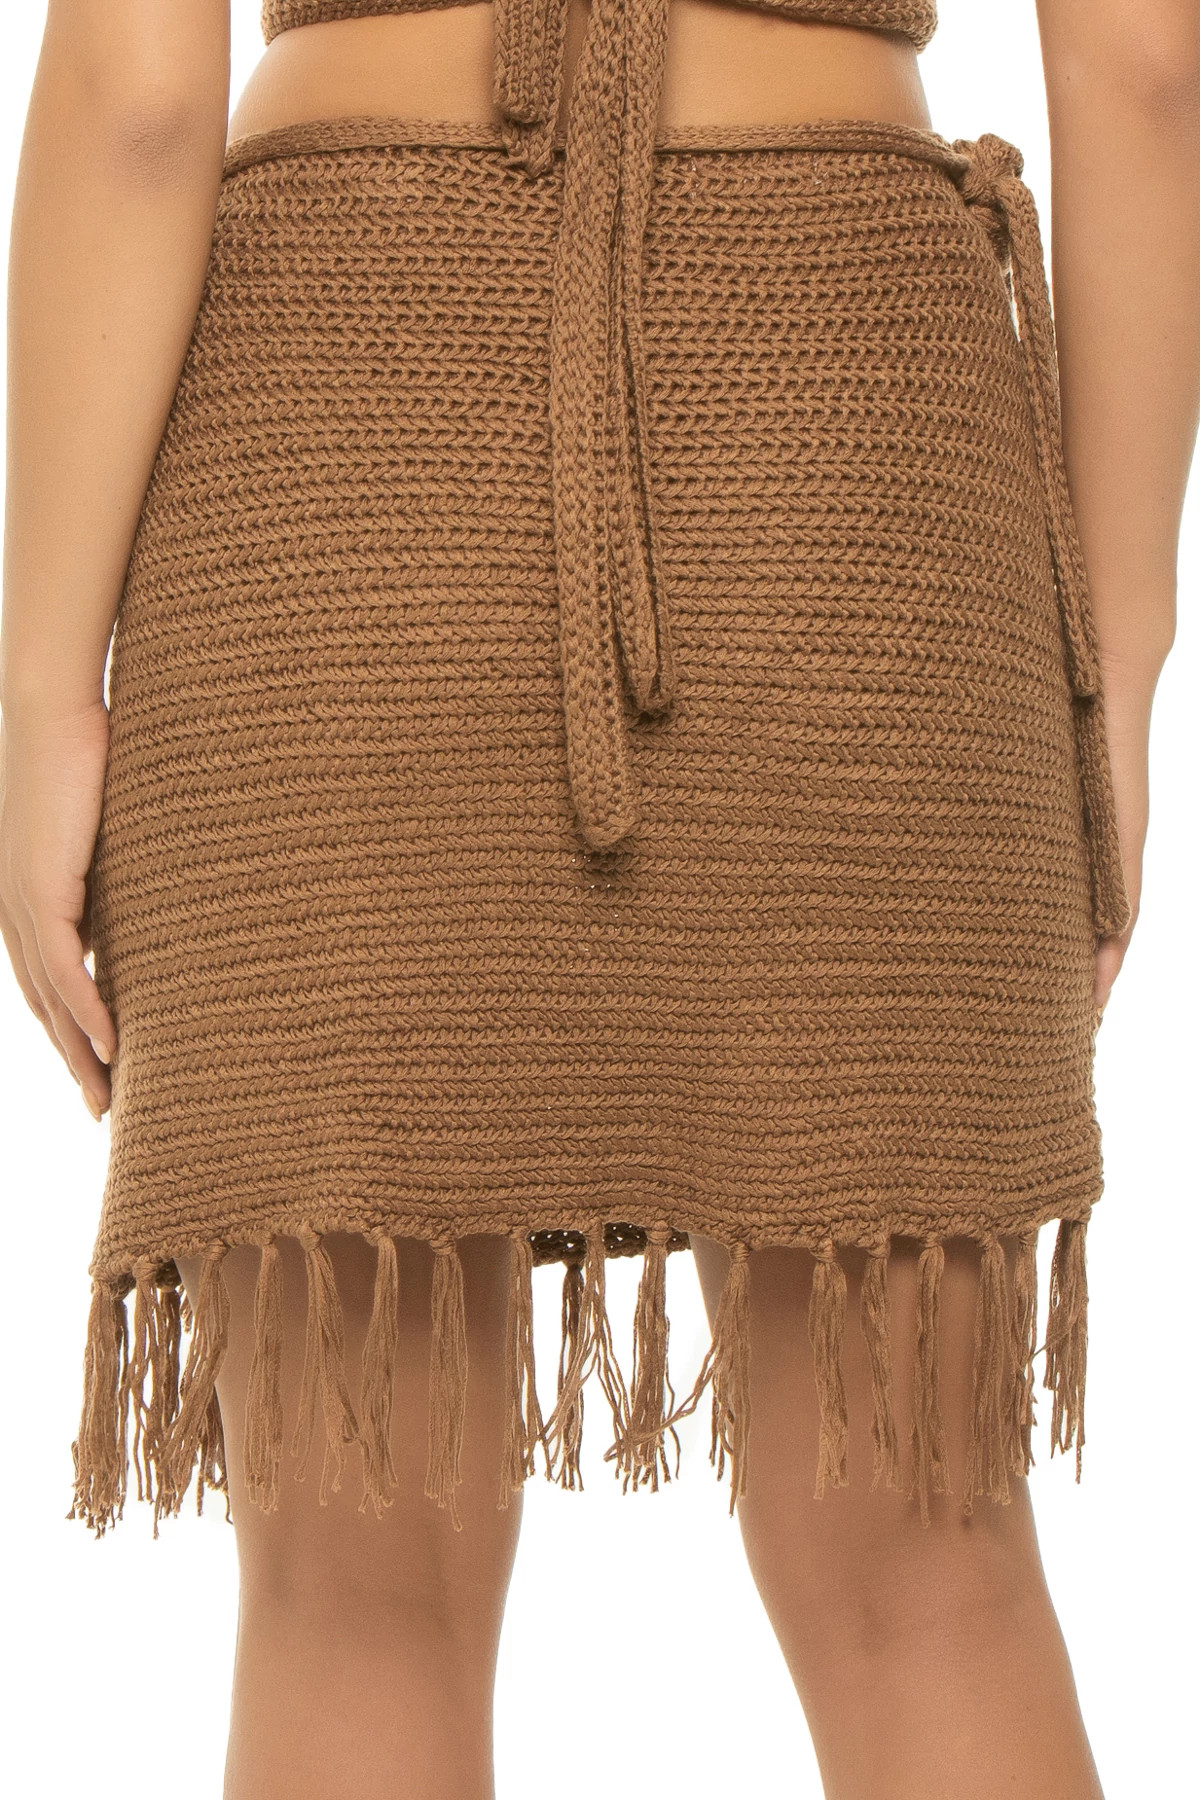 BROWN Crochet Mini Skirt image number 2